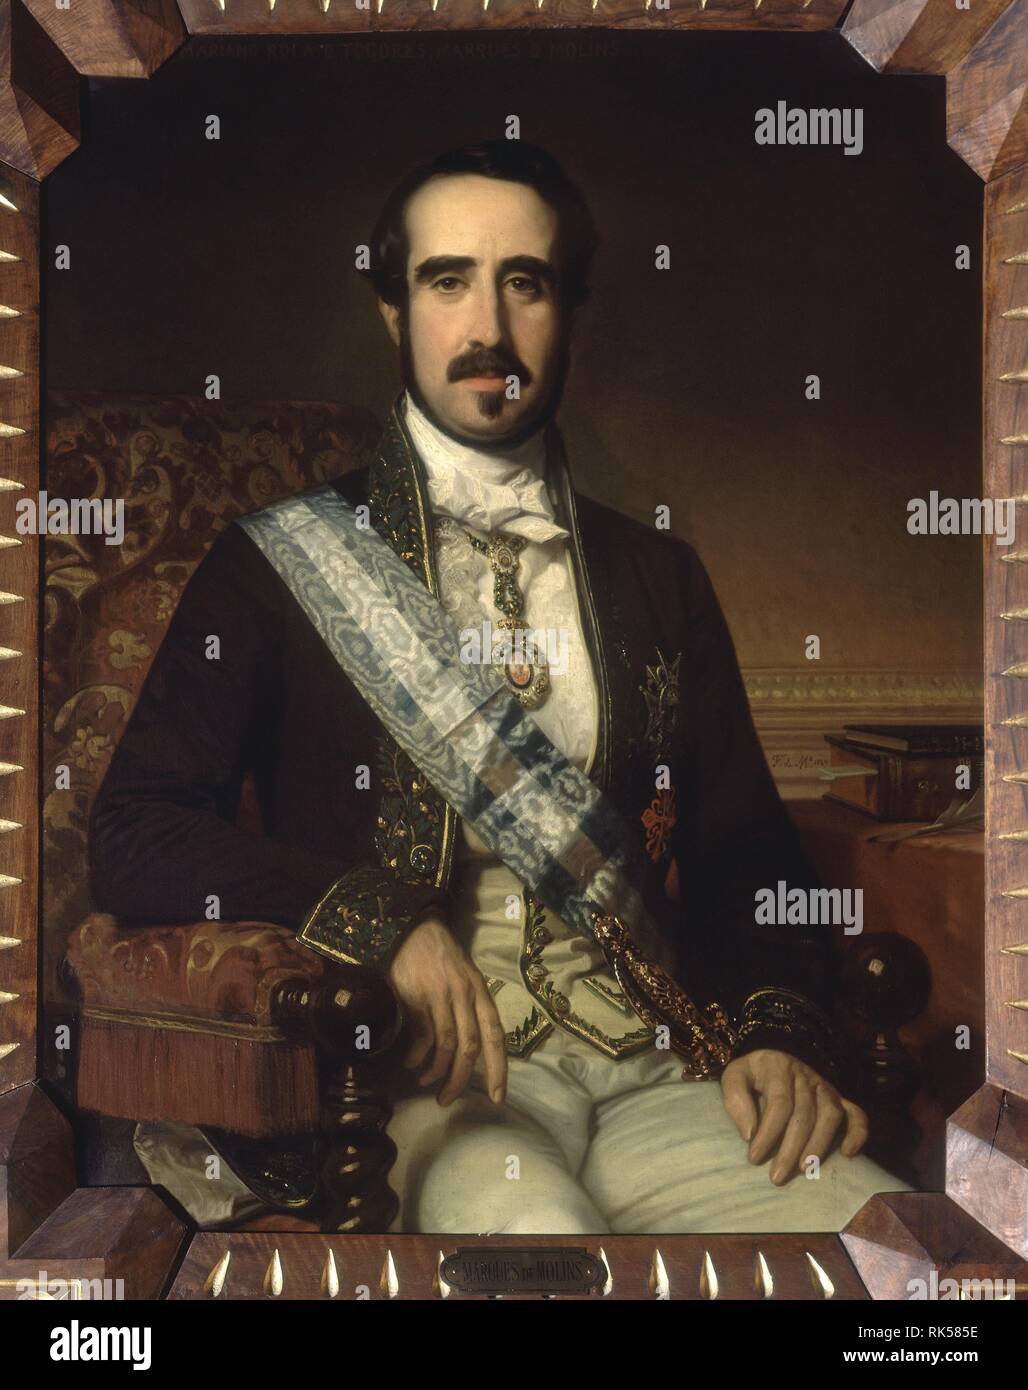 MARIANO ROCA DE TOGORES (1812-1889) O/L  MARQUES DE MOLINS/ DECIMOCUARTO DIRECTOR. Author: MADRAZO, FEDERICO DE. Location: ACADEMIA DE LA LENGUA-COLECCION. MADRID. SPAIN. Stock Photo